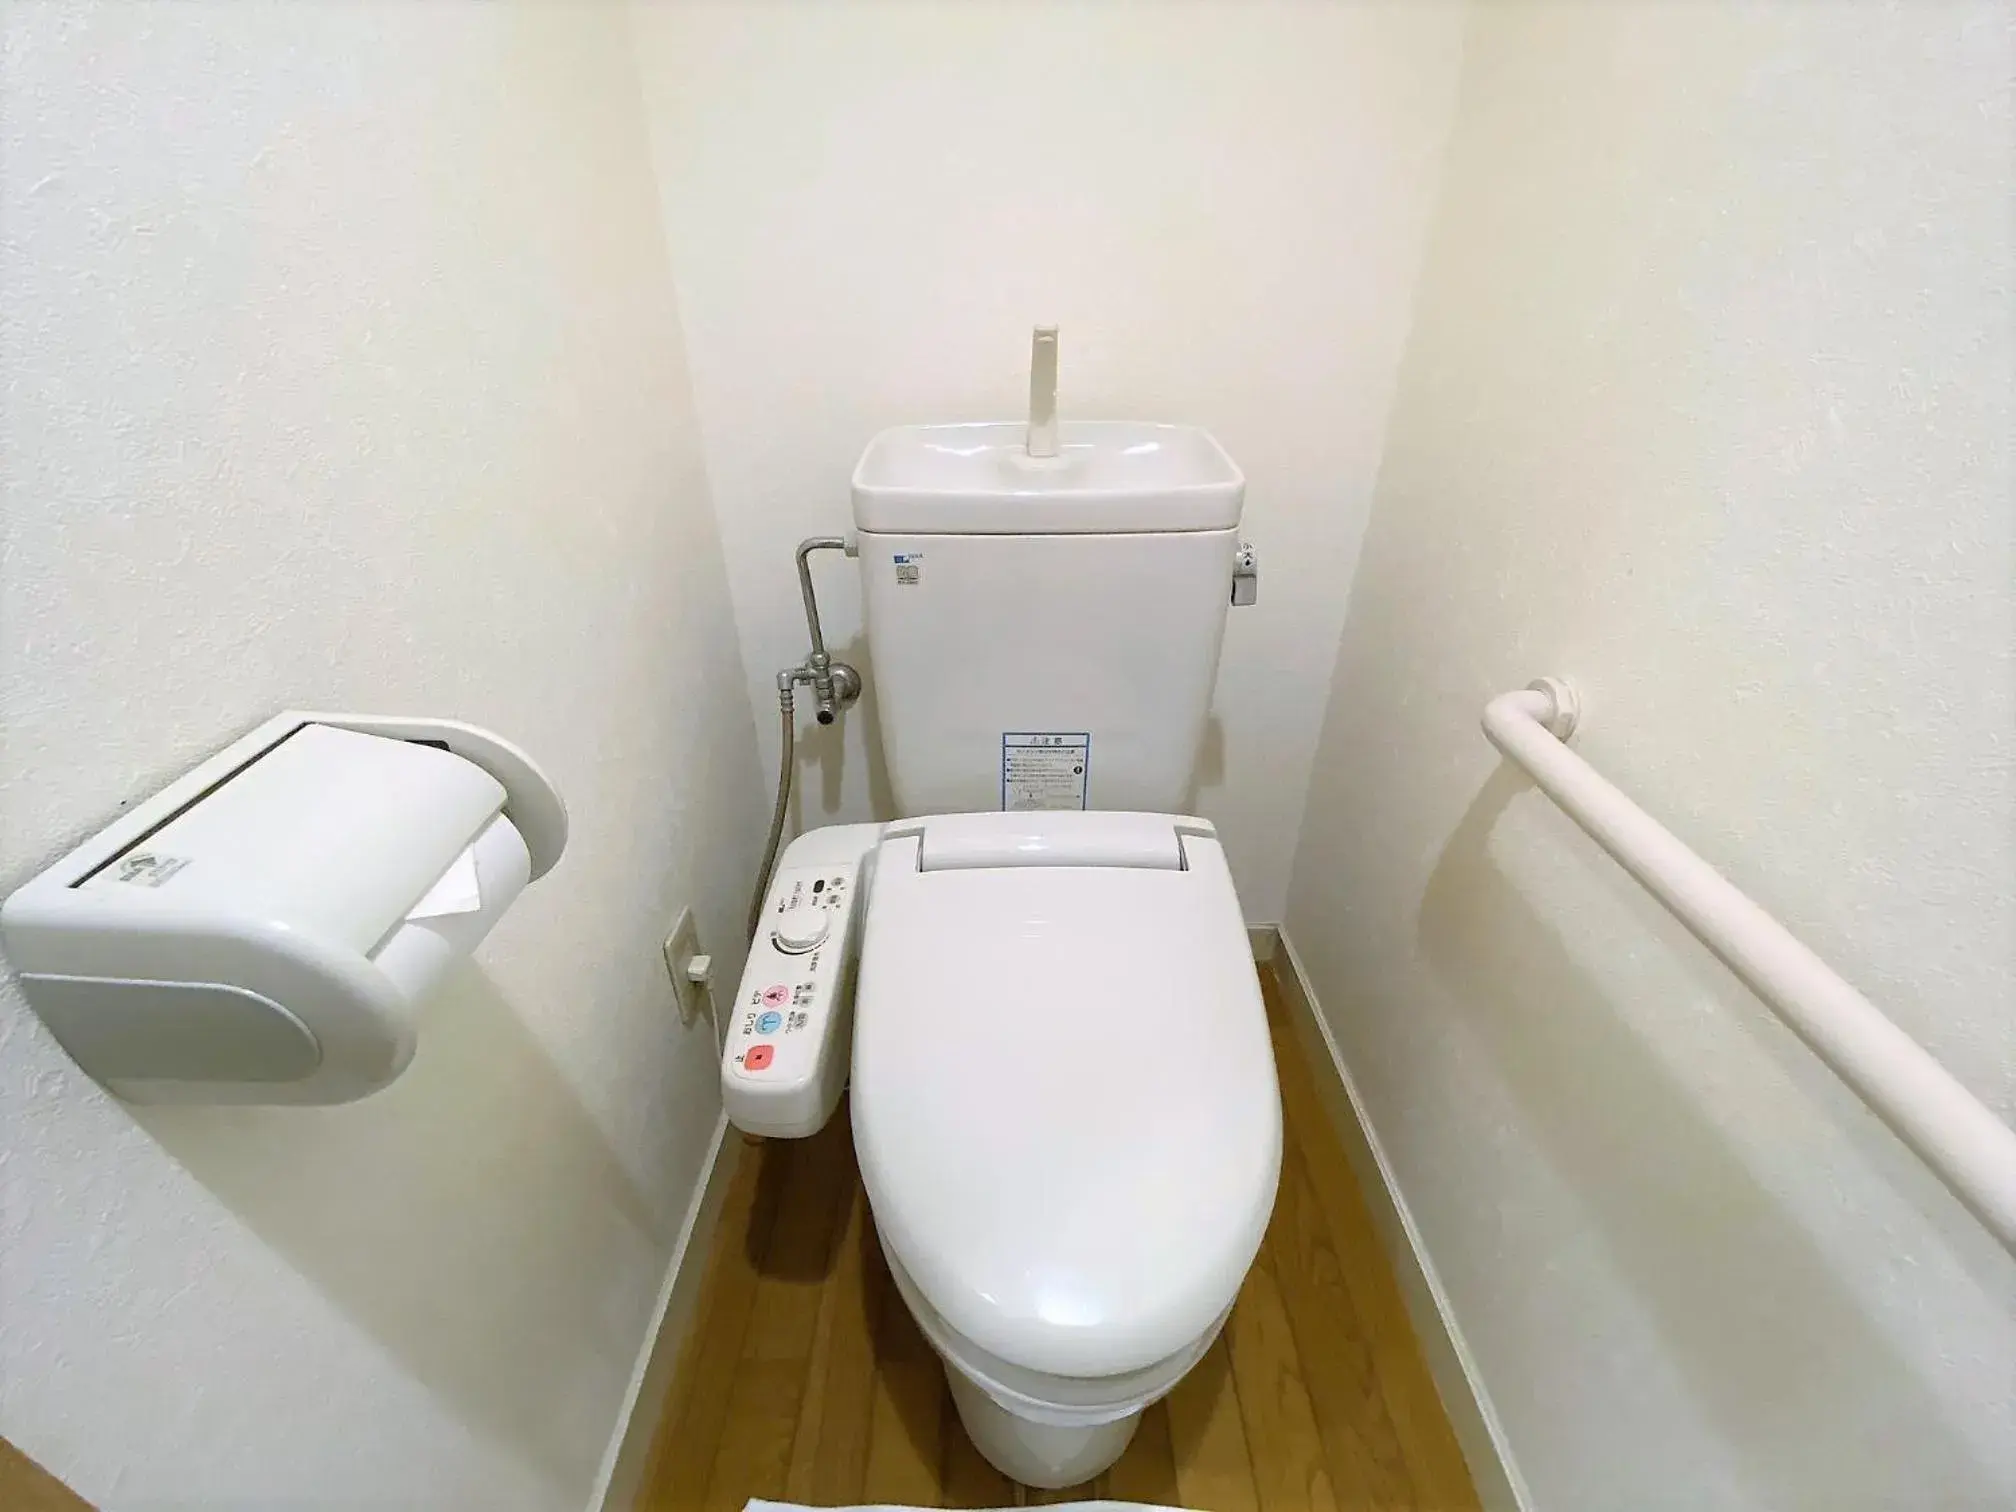 Photo of the whole room, Bathroom in Sakura Hotel Hatagaya